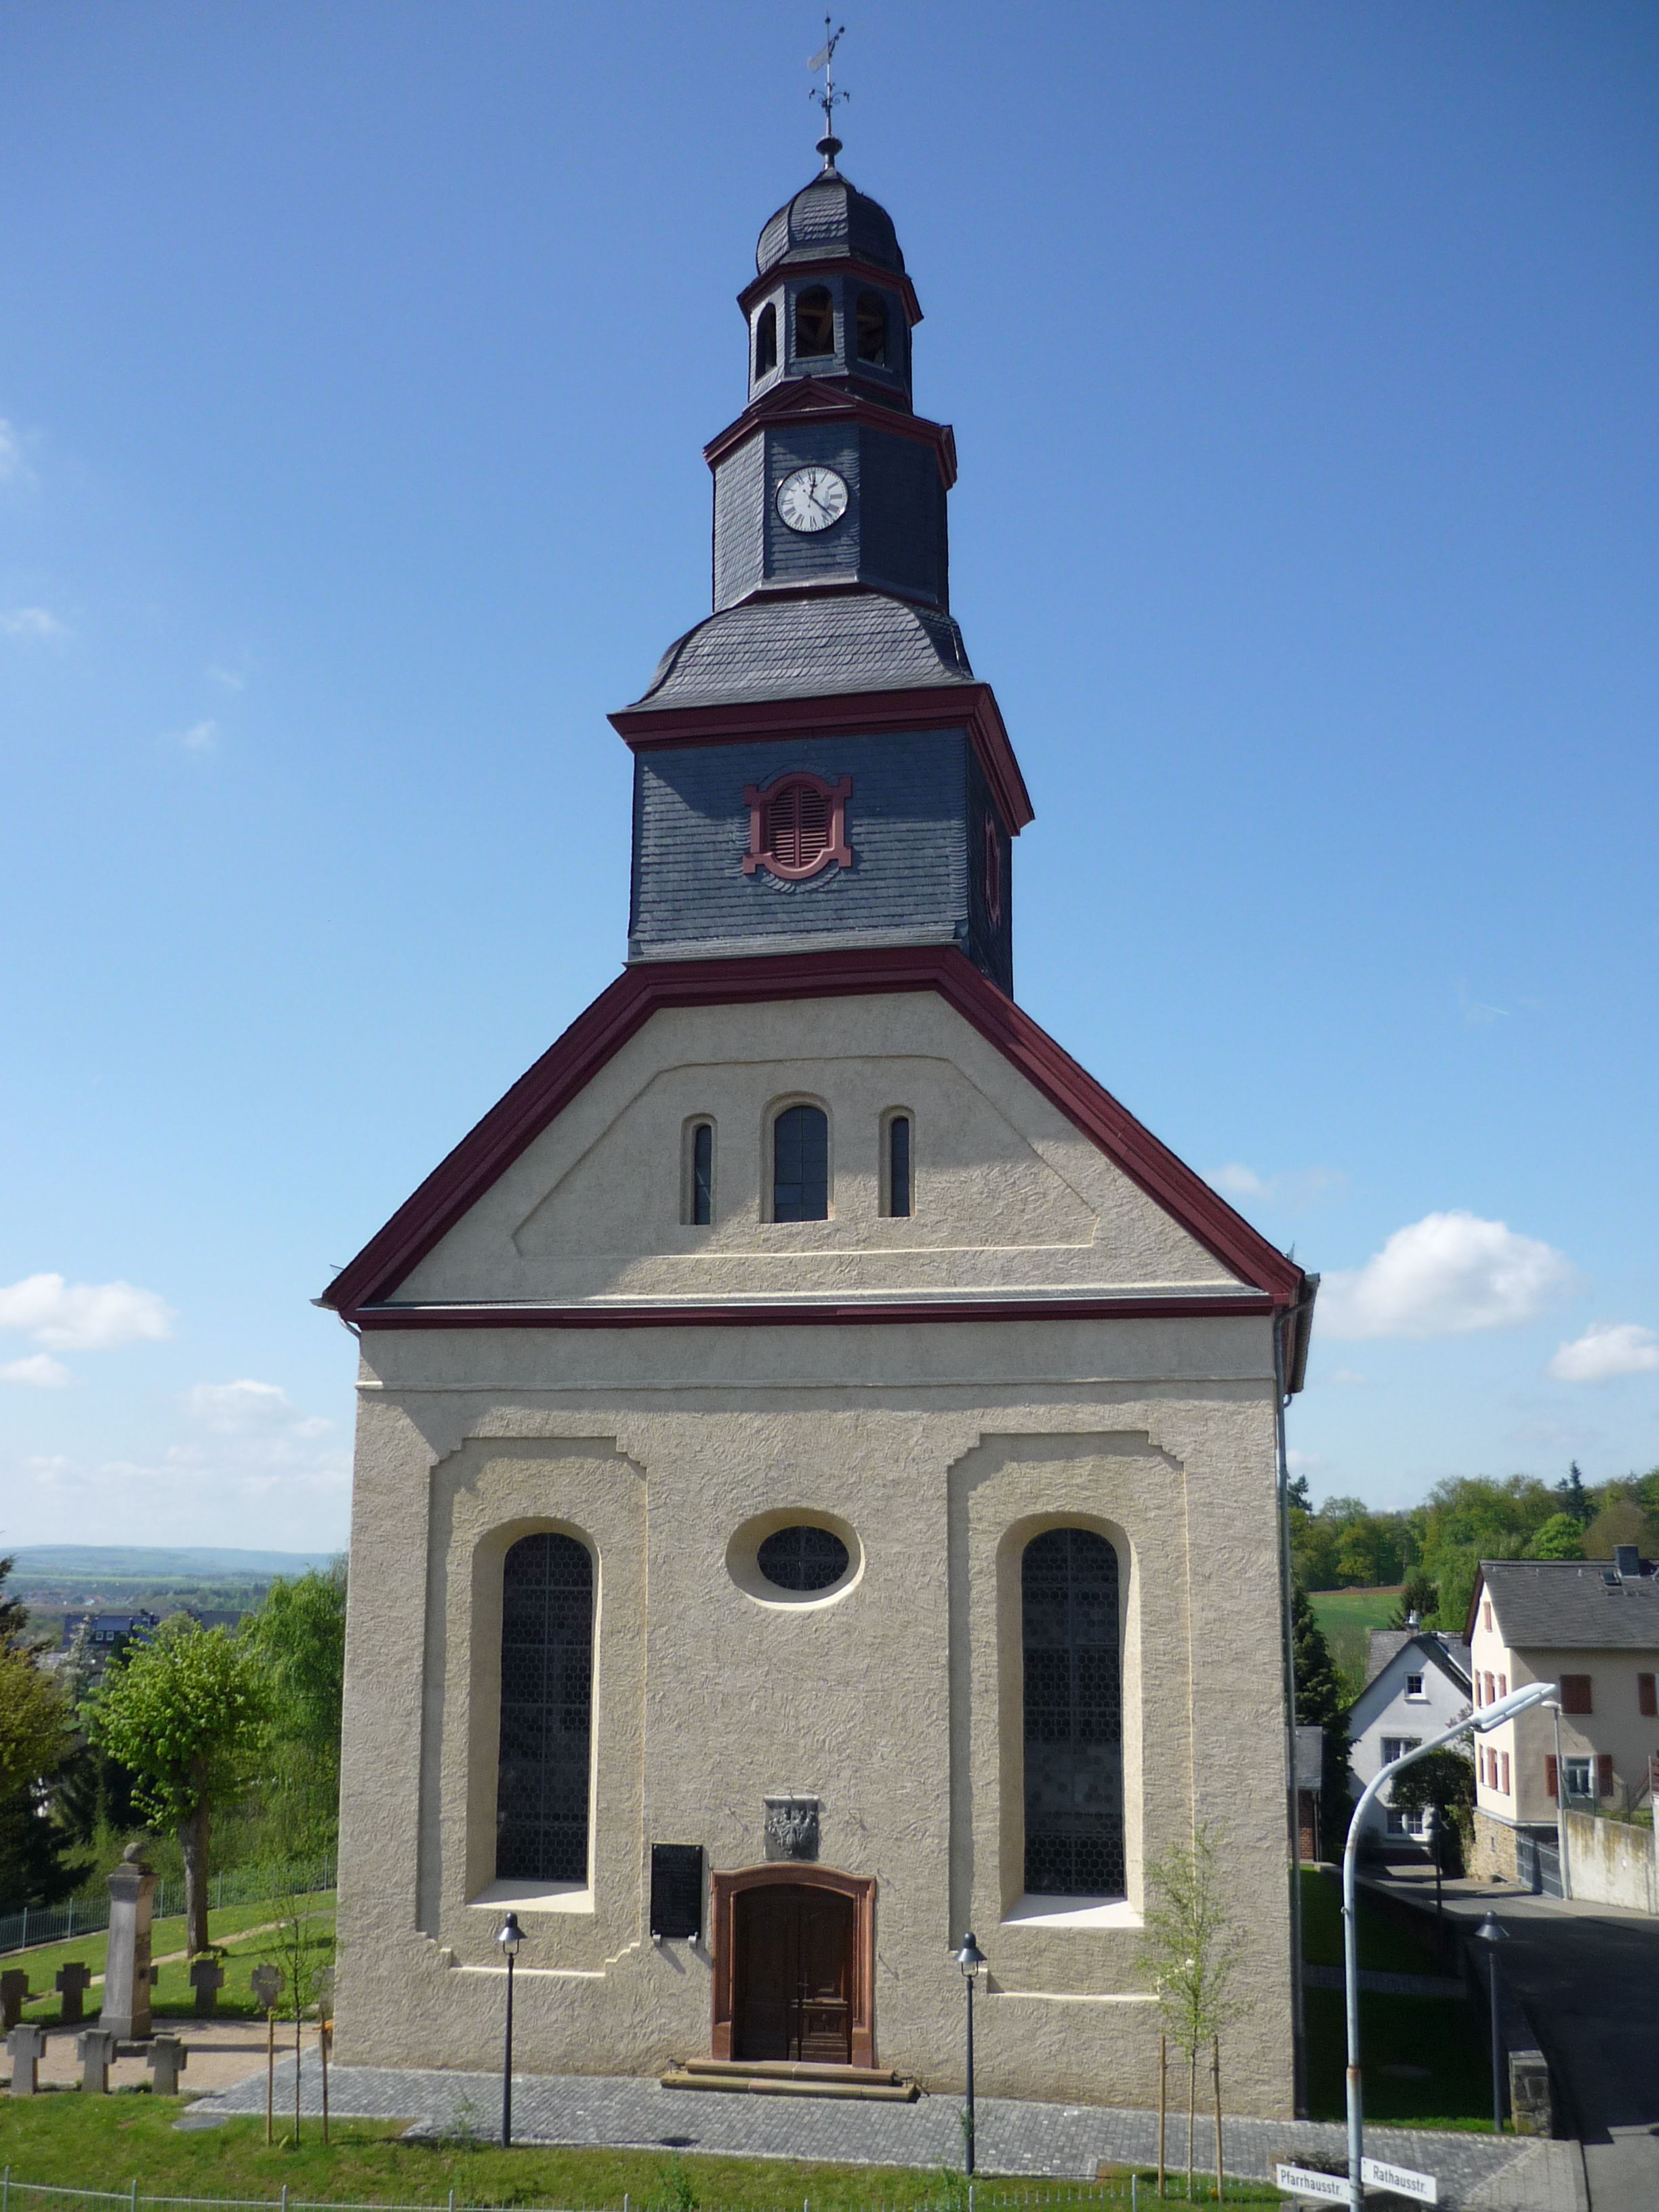 1876 wurde die Kirche nach dem zweiten Brand 1873 eingeweiht. Die relativ große Kirche diente damals 3 Gemeinden (Seelbach, Falkenbach und Aumenau), heute nur noch Seelbach. Die Empore wurde in den siebziger Jahren zum Gemeinderaum mit Küchenzeile umgebau